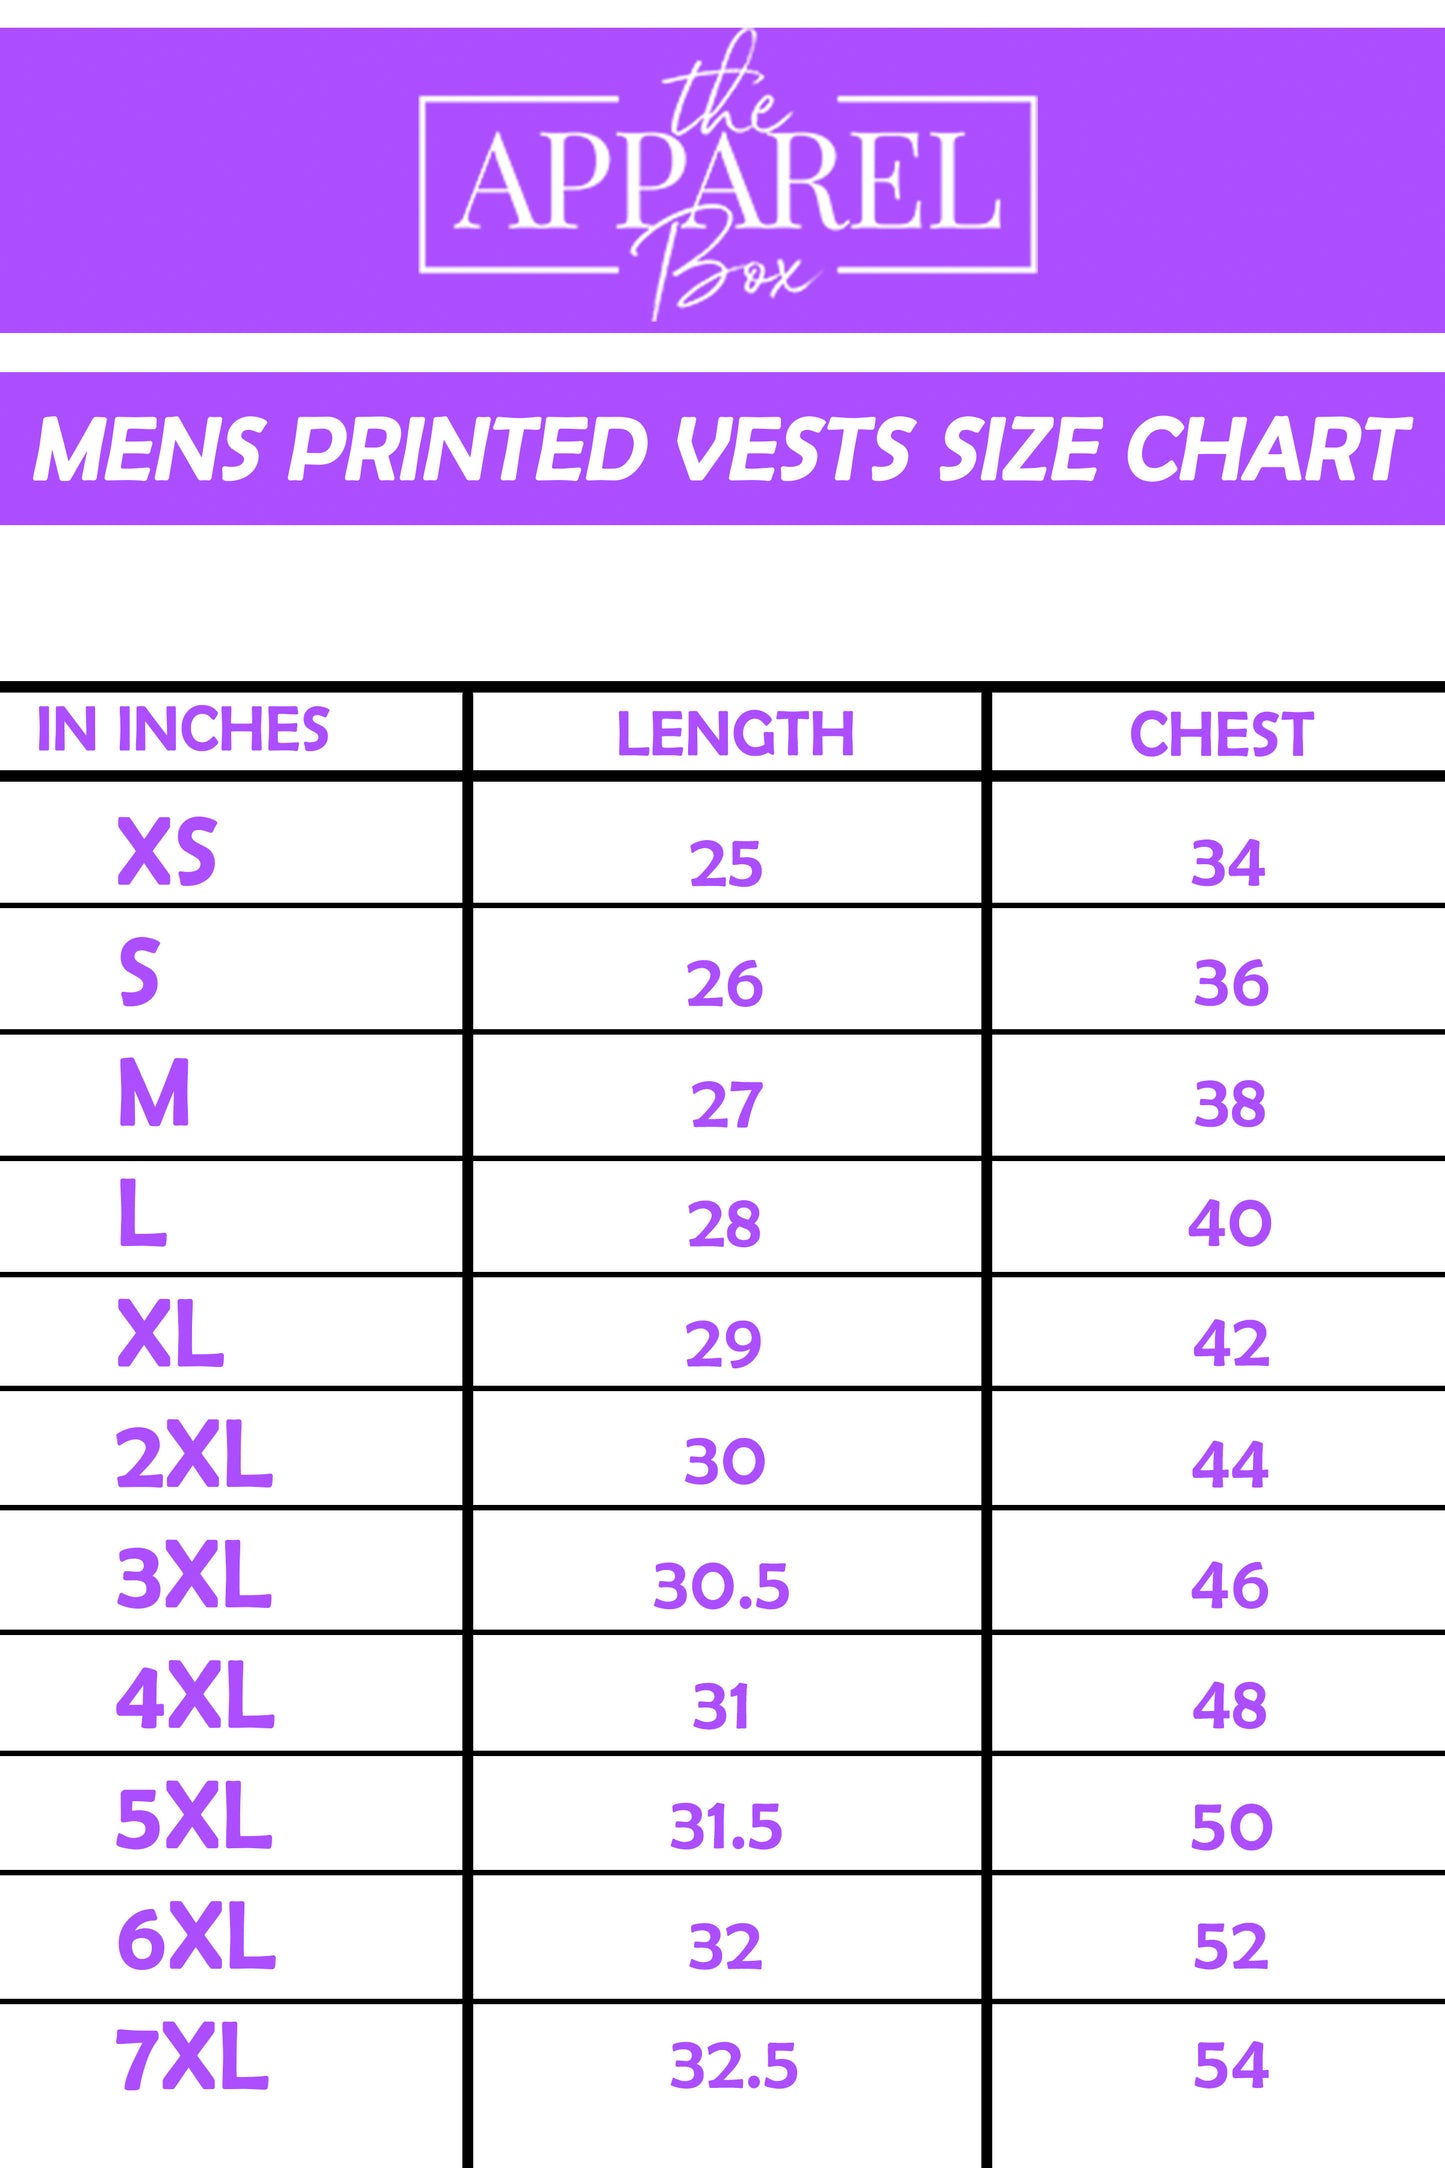 Printed Vest#26